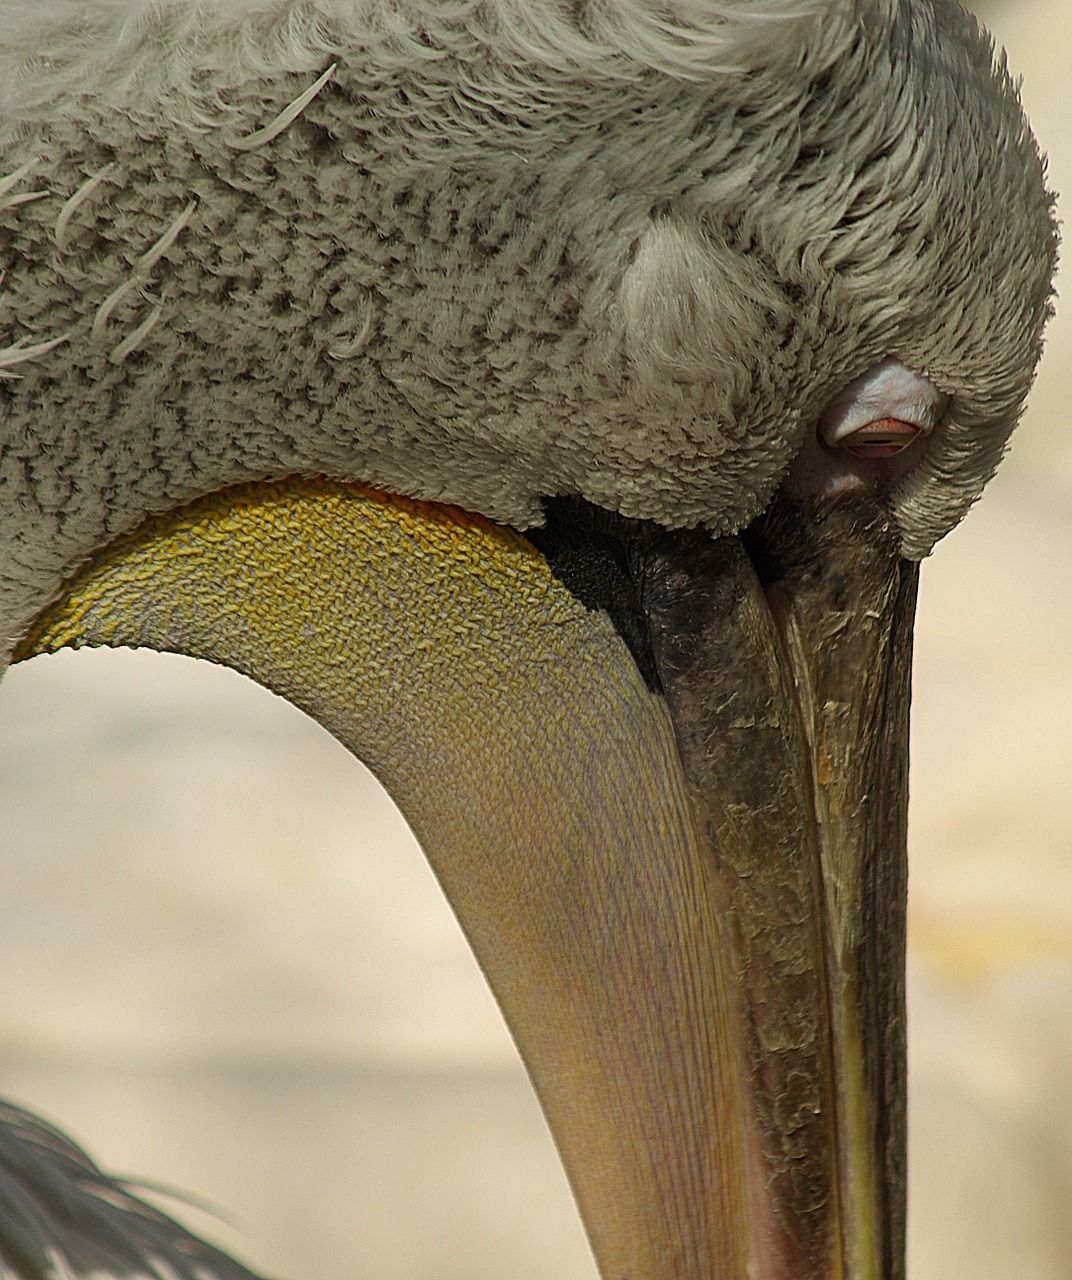 pelican head beak free photo